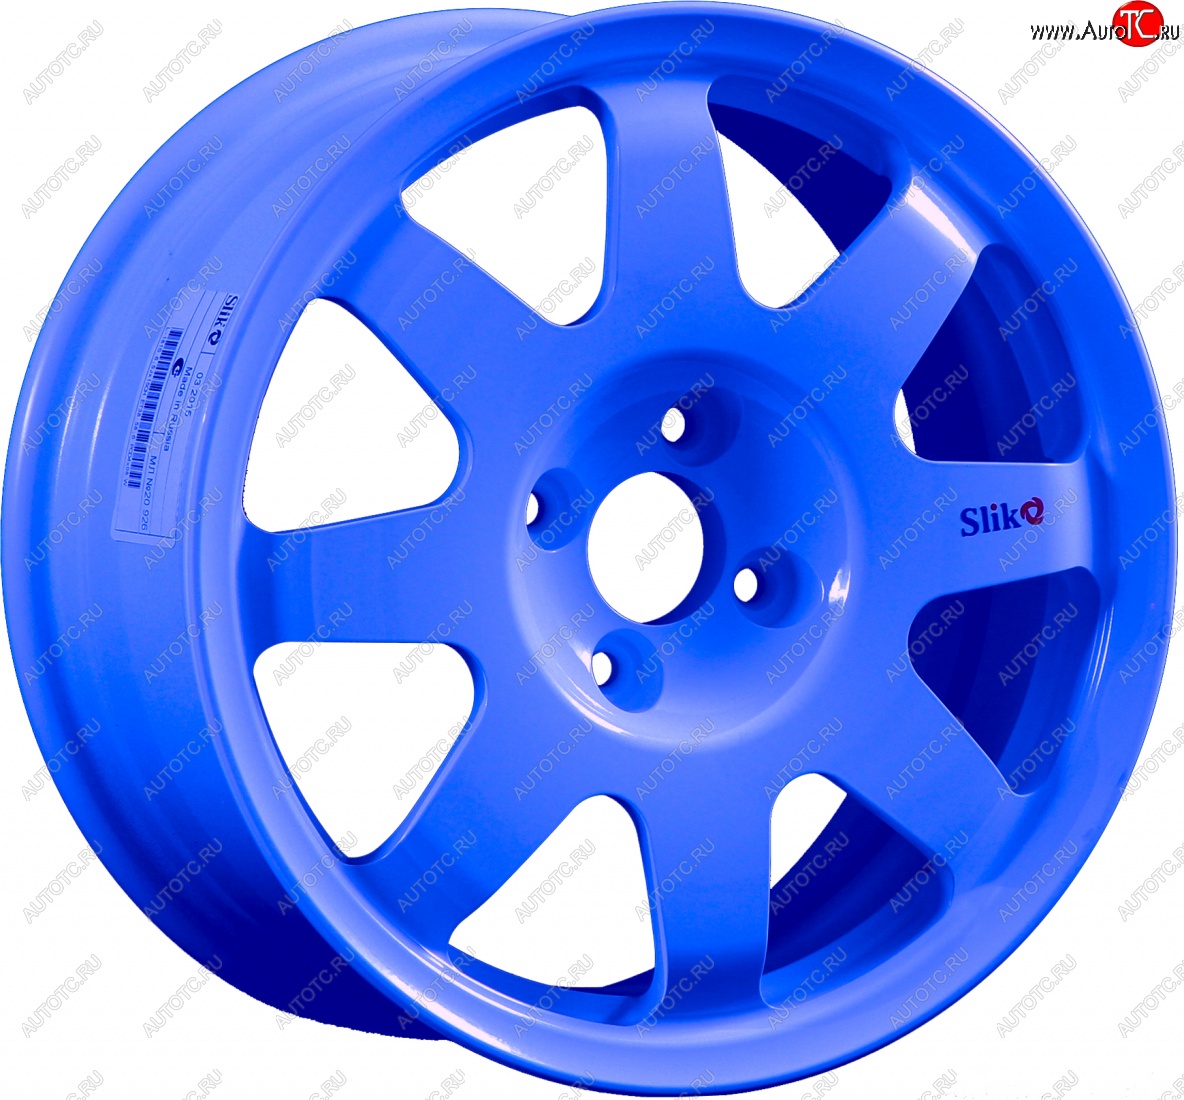 15 599 р. Кованый диск Slik Classic Sport L-181S 6.5x15   (Синий (BLUE))